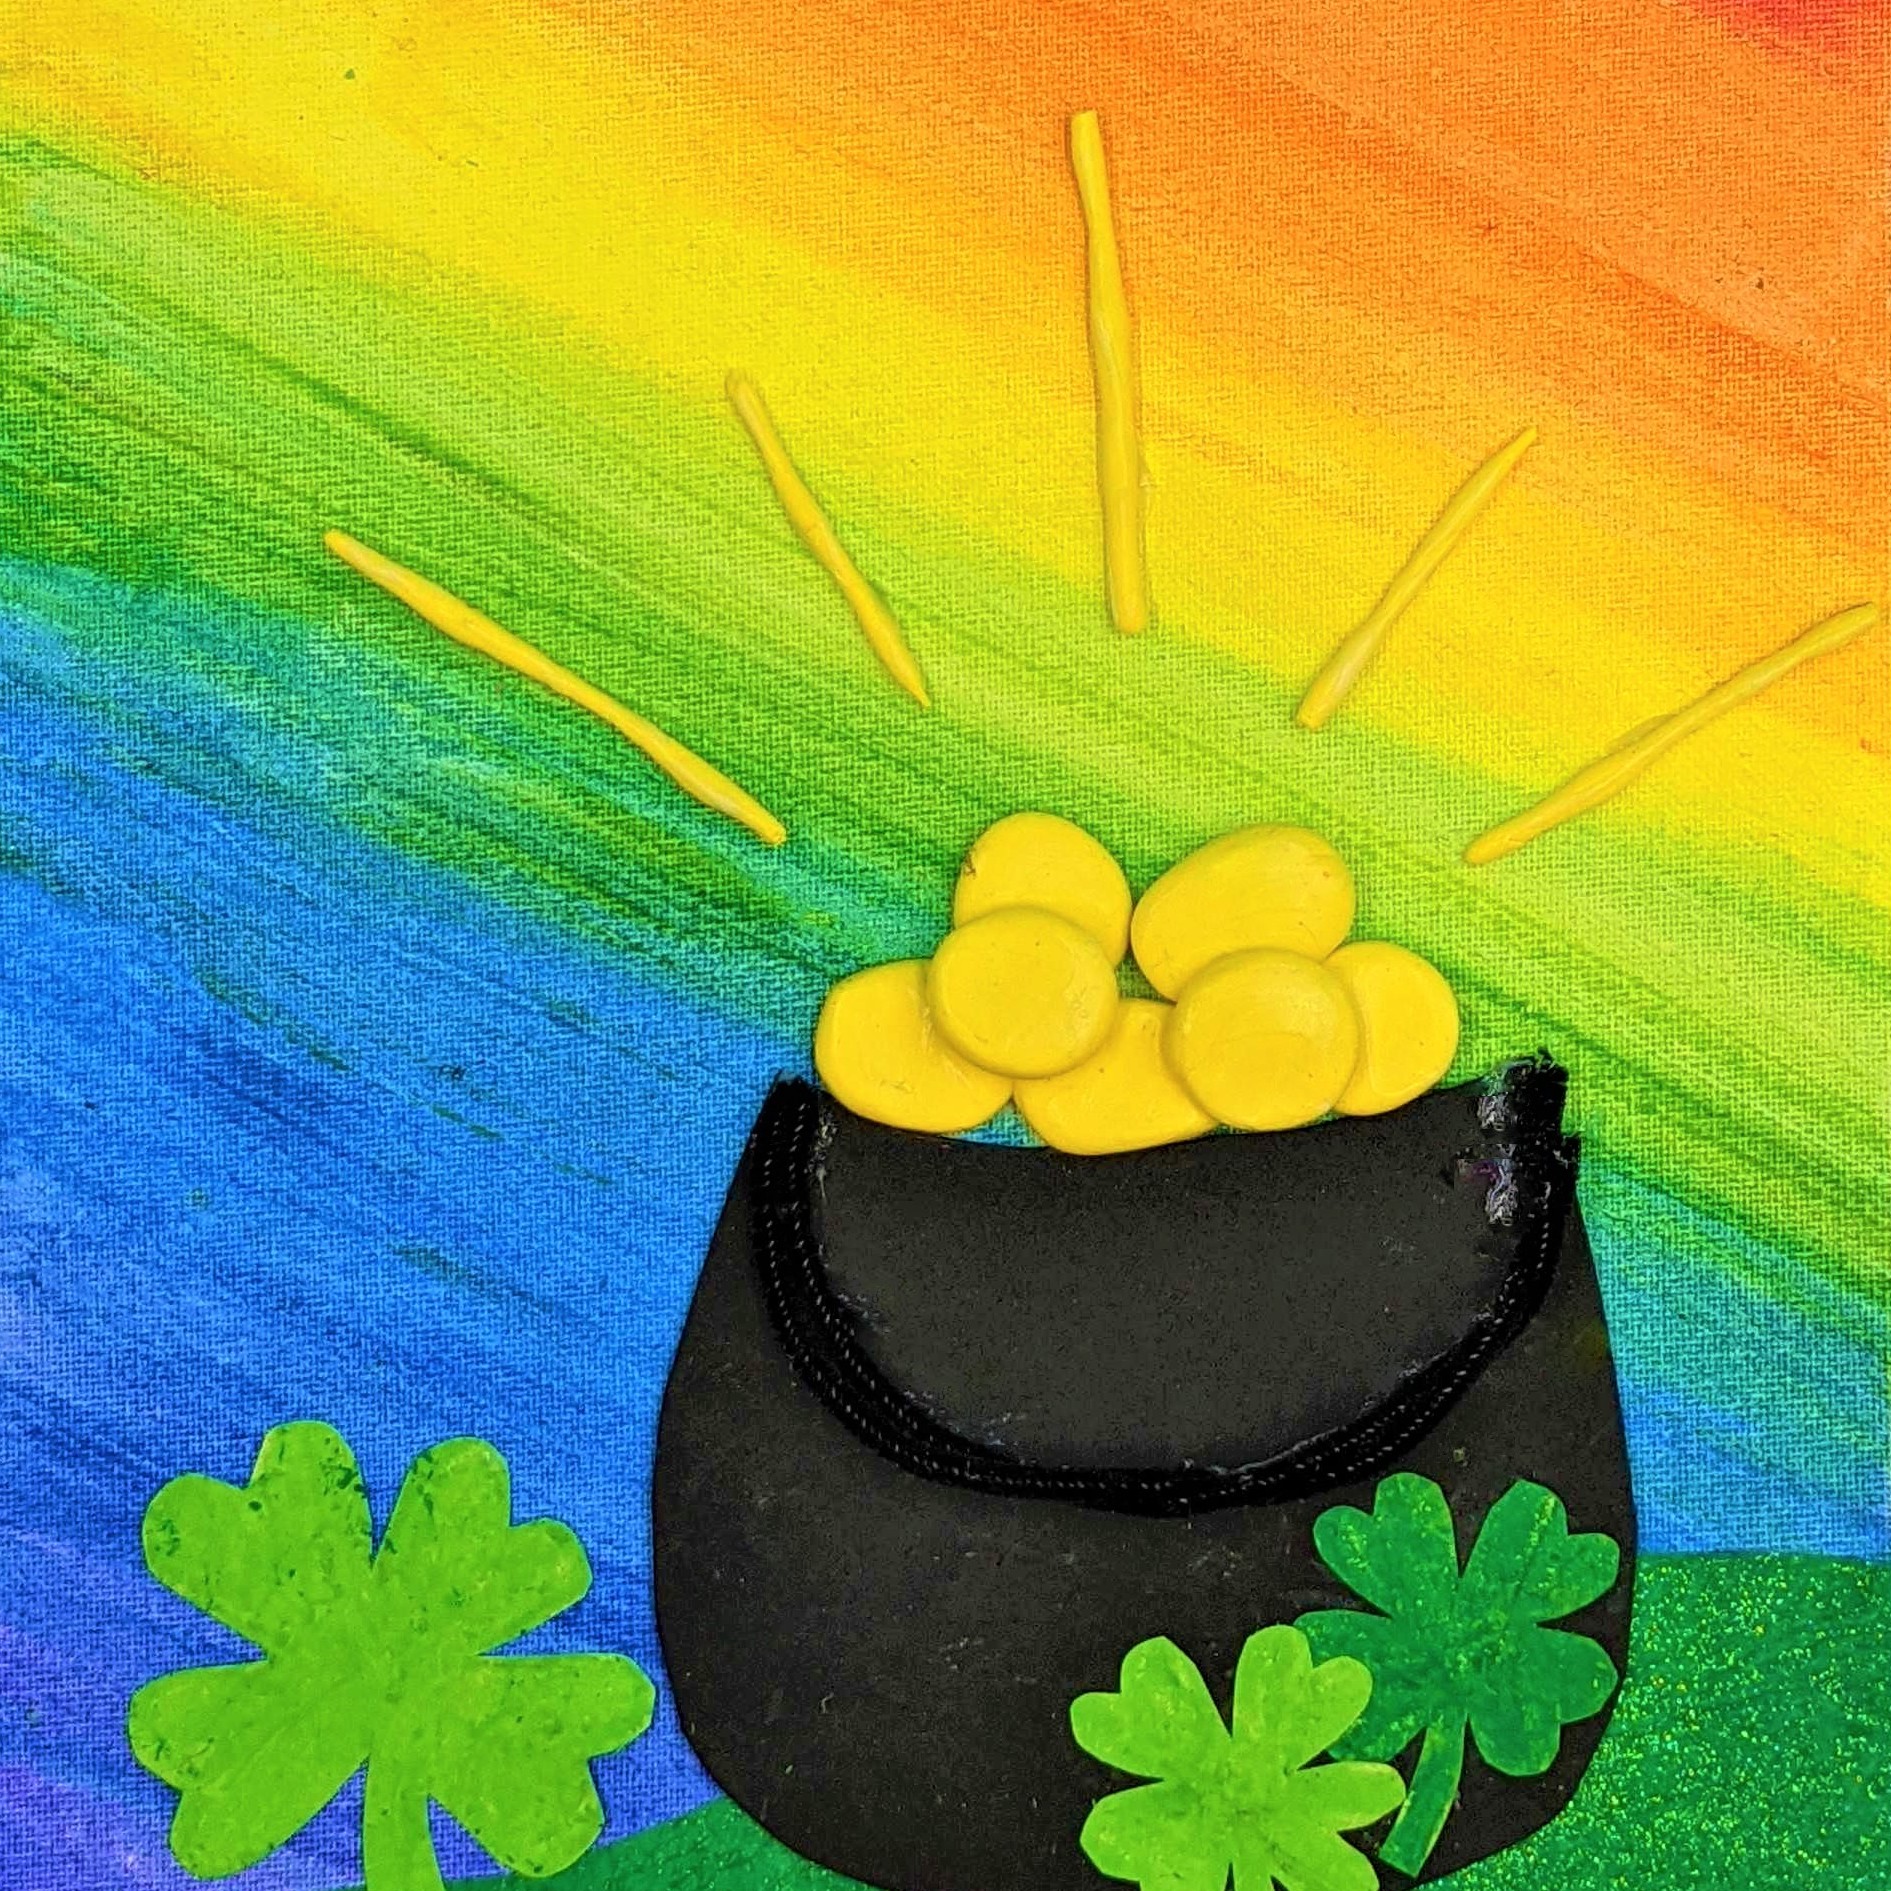 Kidcreate Studio - Brownsville, St. Patrick's Day Rainbow on Canvas Art Project